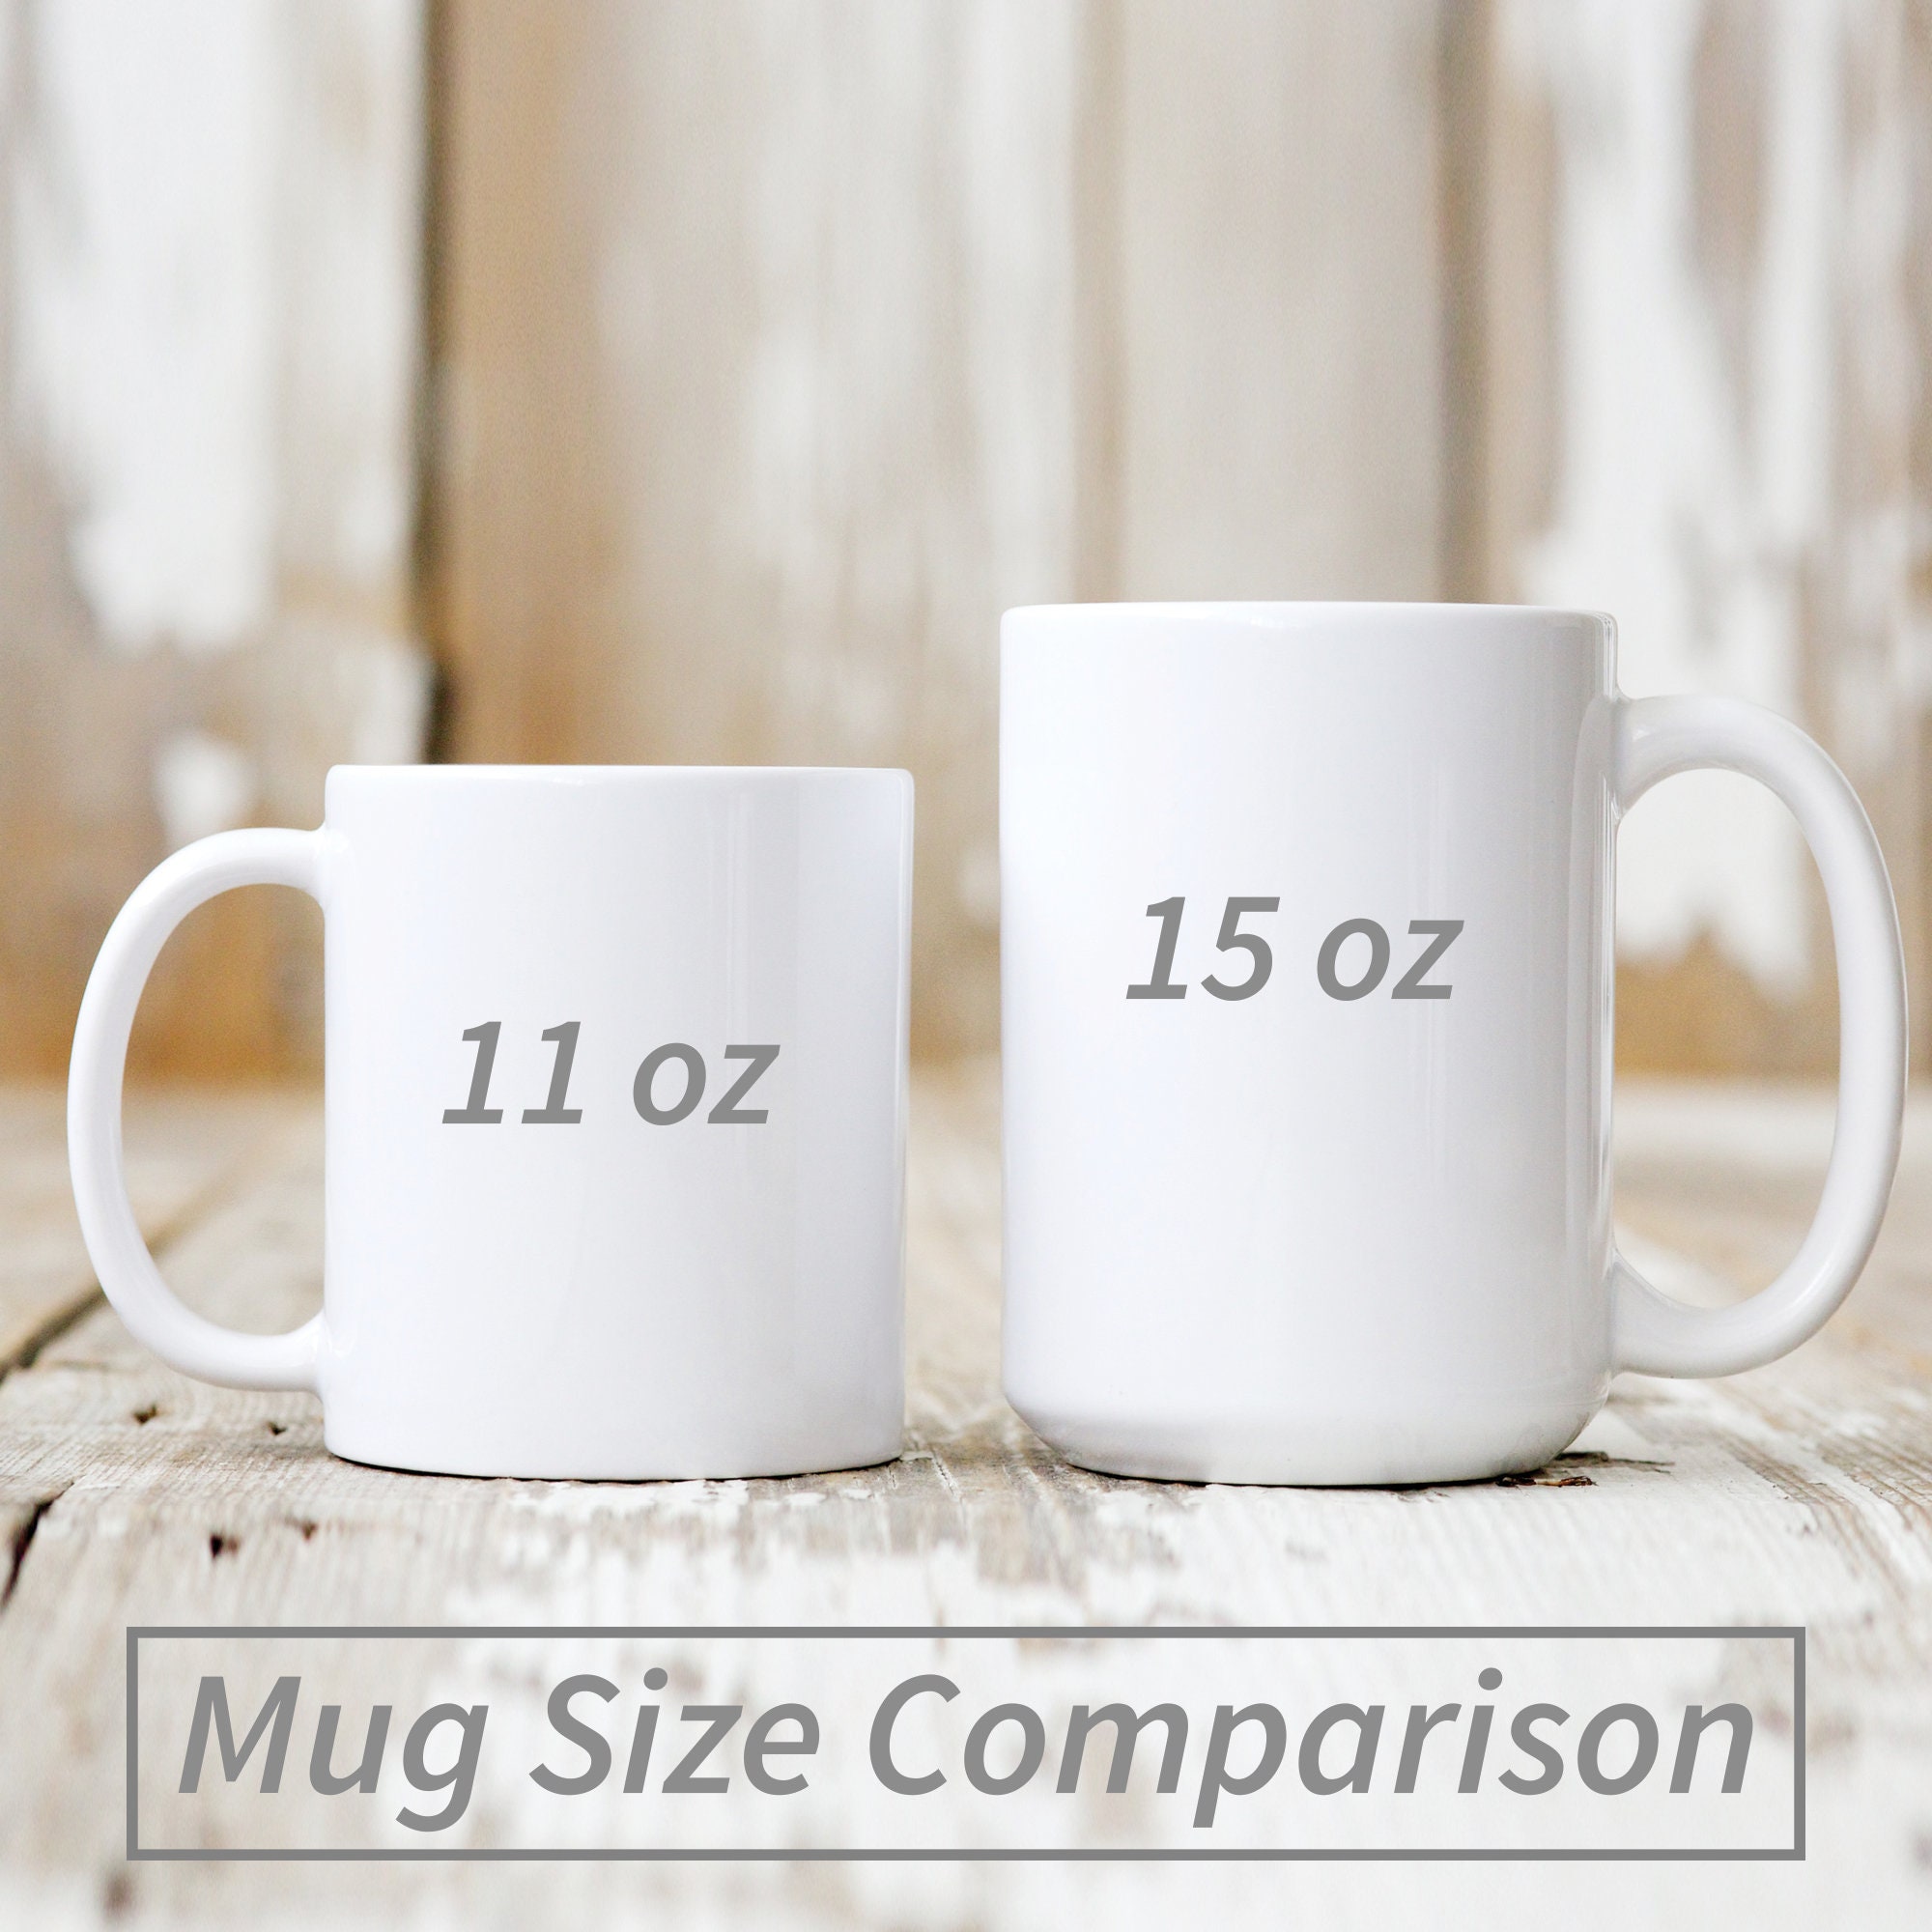 Coffee Mug Shoresy Mug Standard Mug Mug Coffee Mug Tea Mug Unique Gifting ideas for Friend/coworker/loved ones 11 oz Premium Quality printed coffee mug 